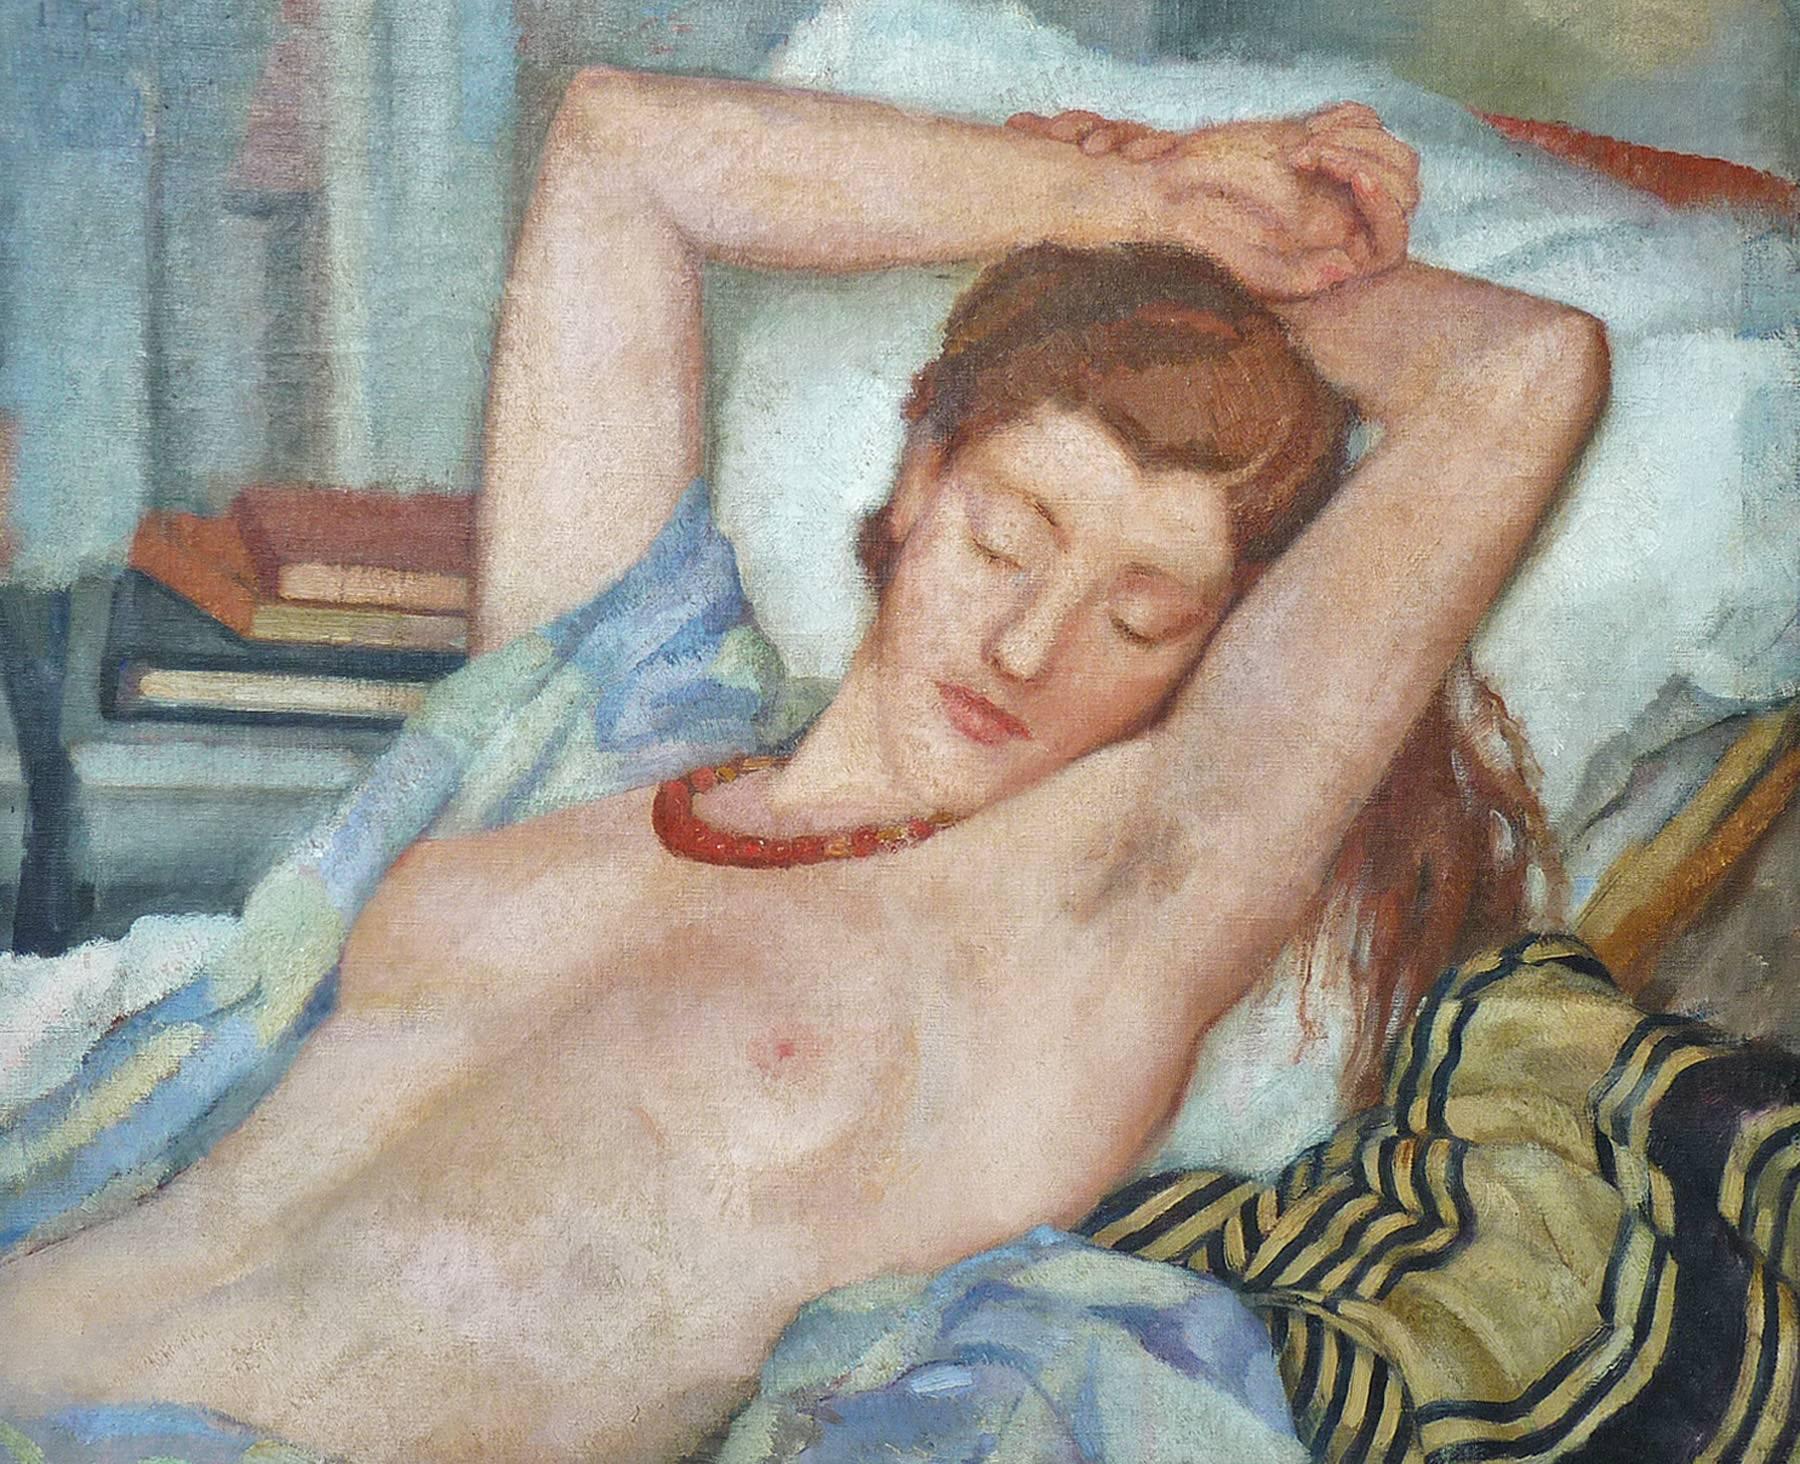 Reclining nude, half length figure portrait, by italian artist Cecchi-Pierracini - Painting by Leonetta Cecchi-Pieraccini